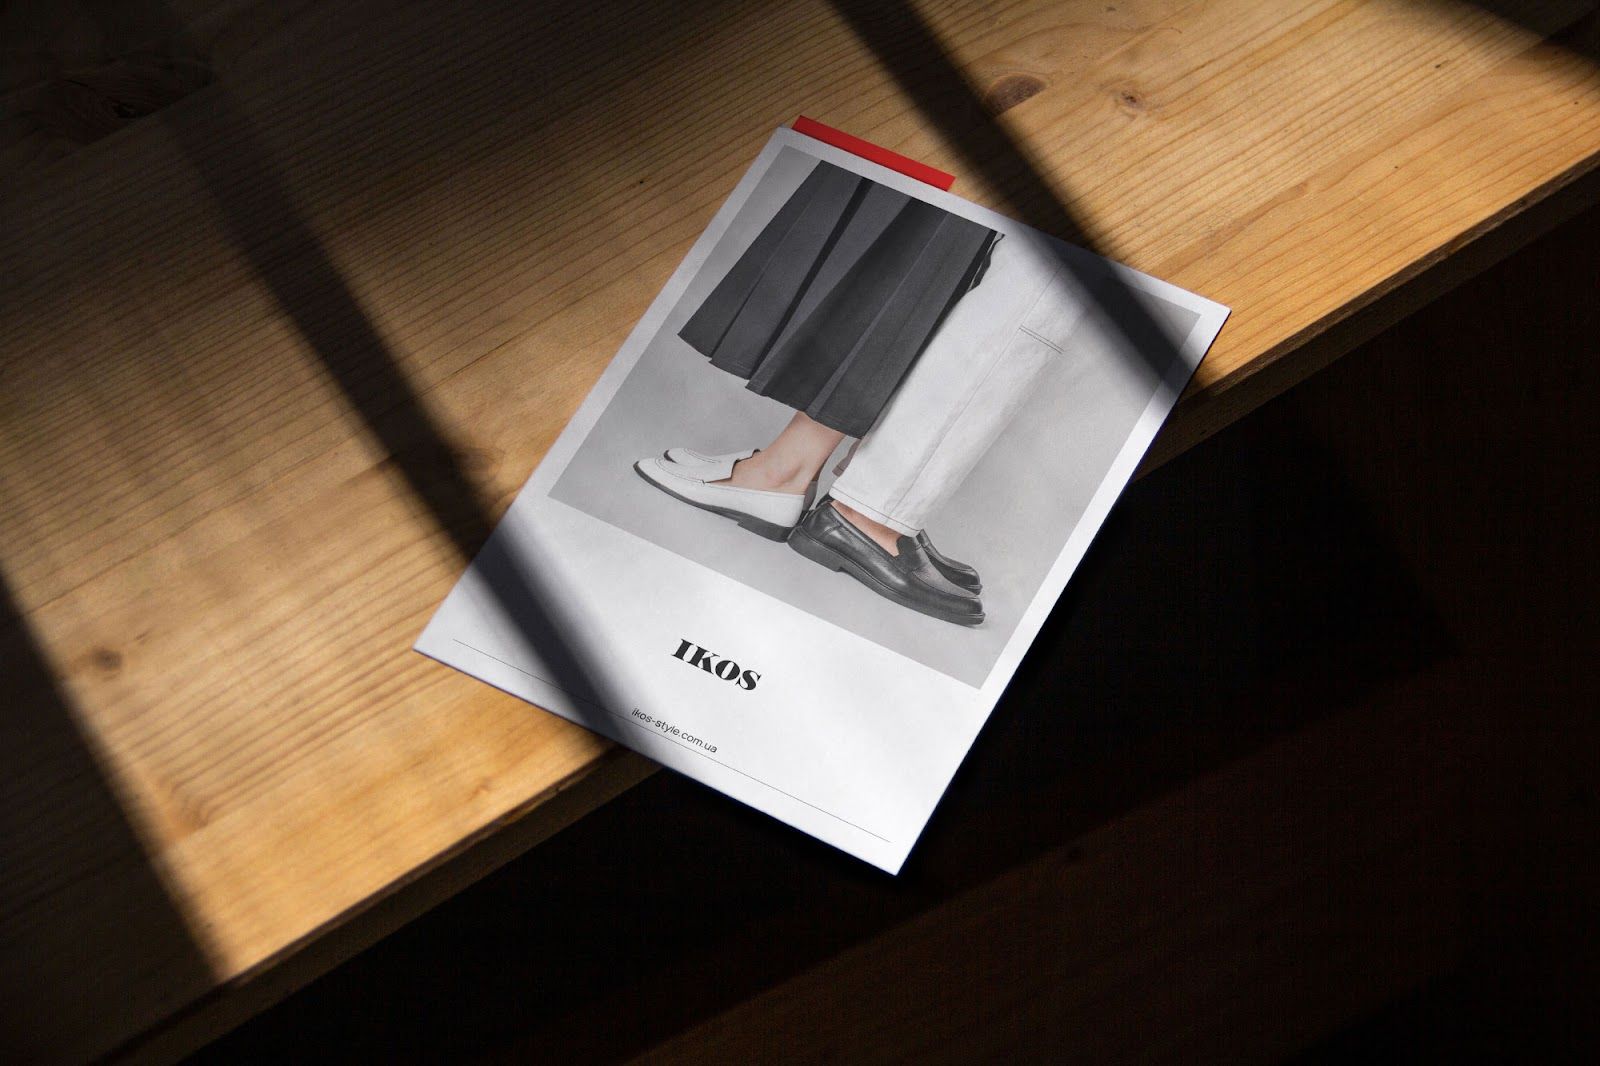 Clean rebranding for the IKOS footwear brand